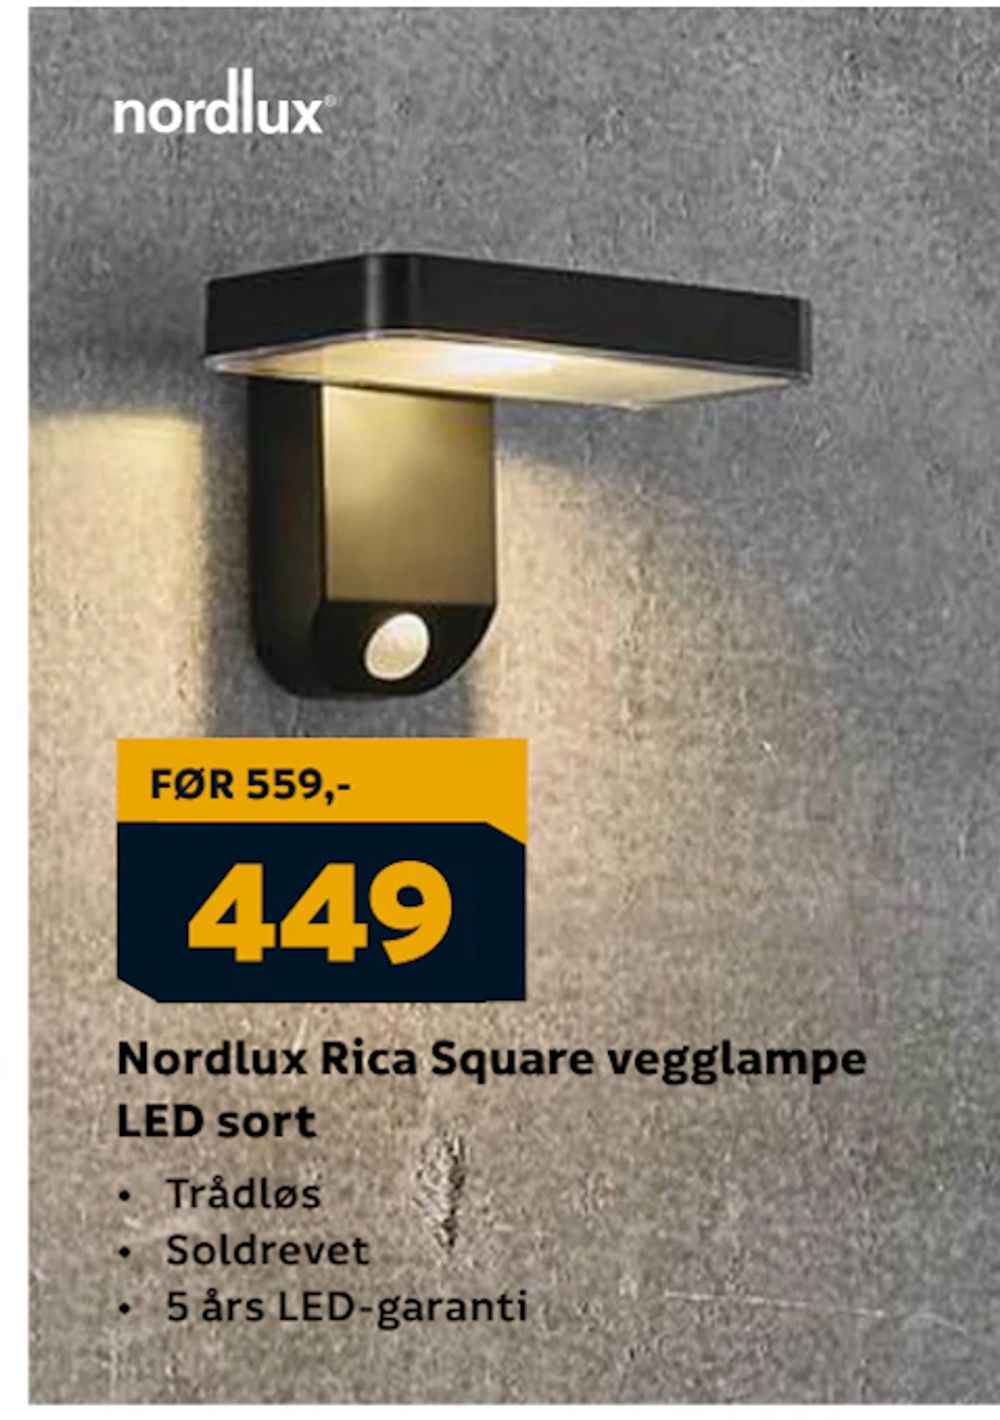 Tilbud på Nordlux Rica Square vegglampe LED sort fra Megaflis til 449 kr